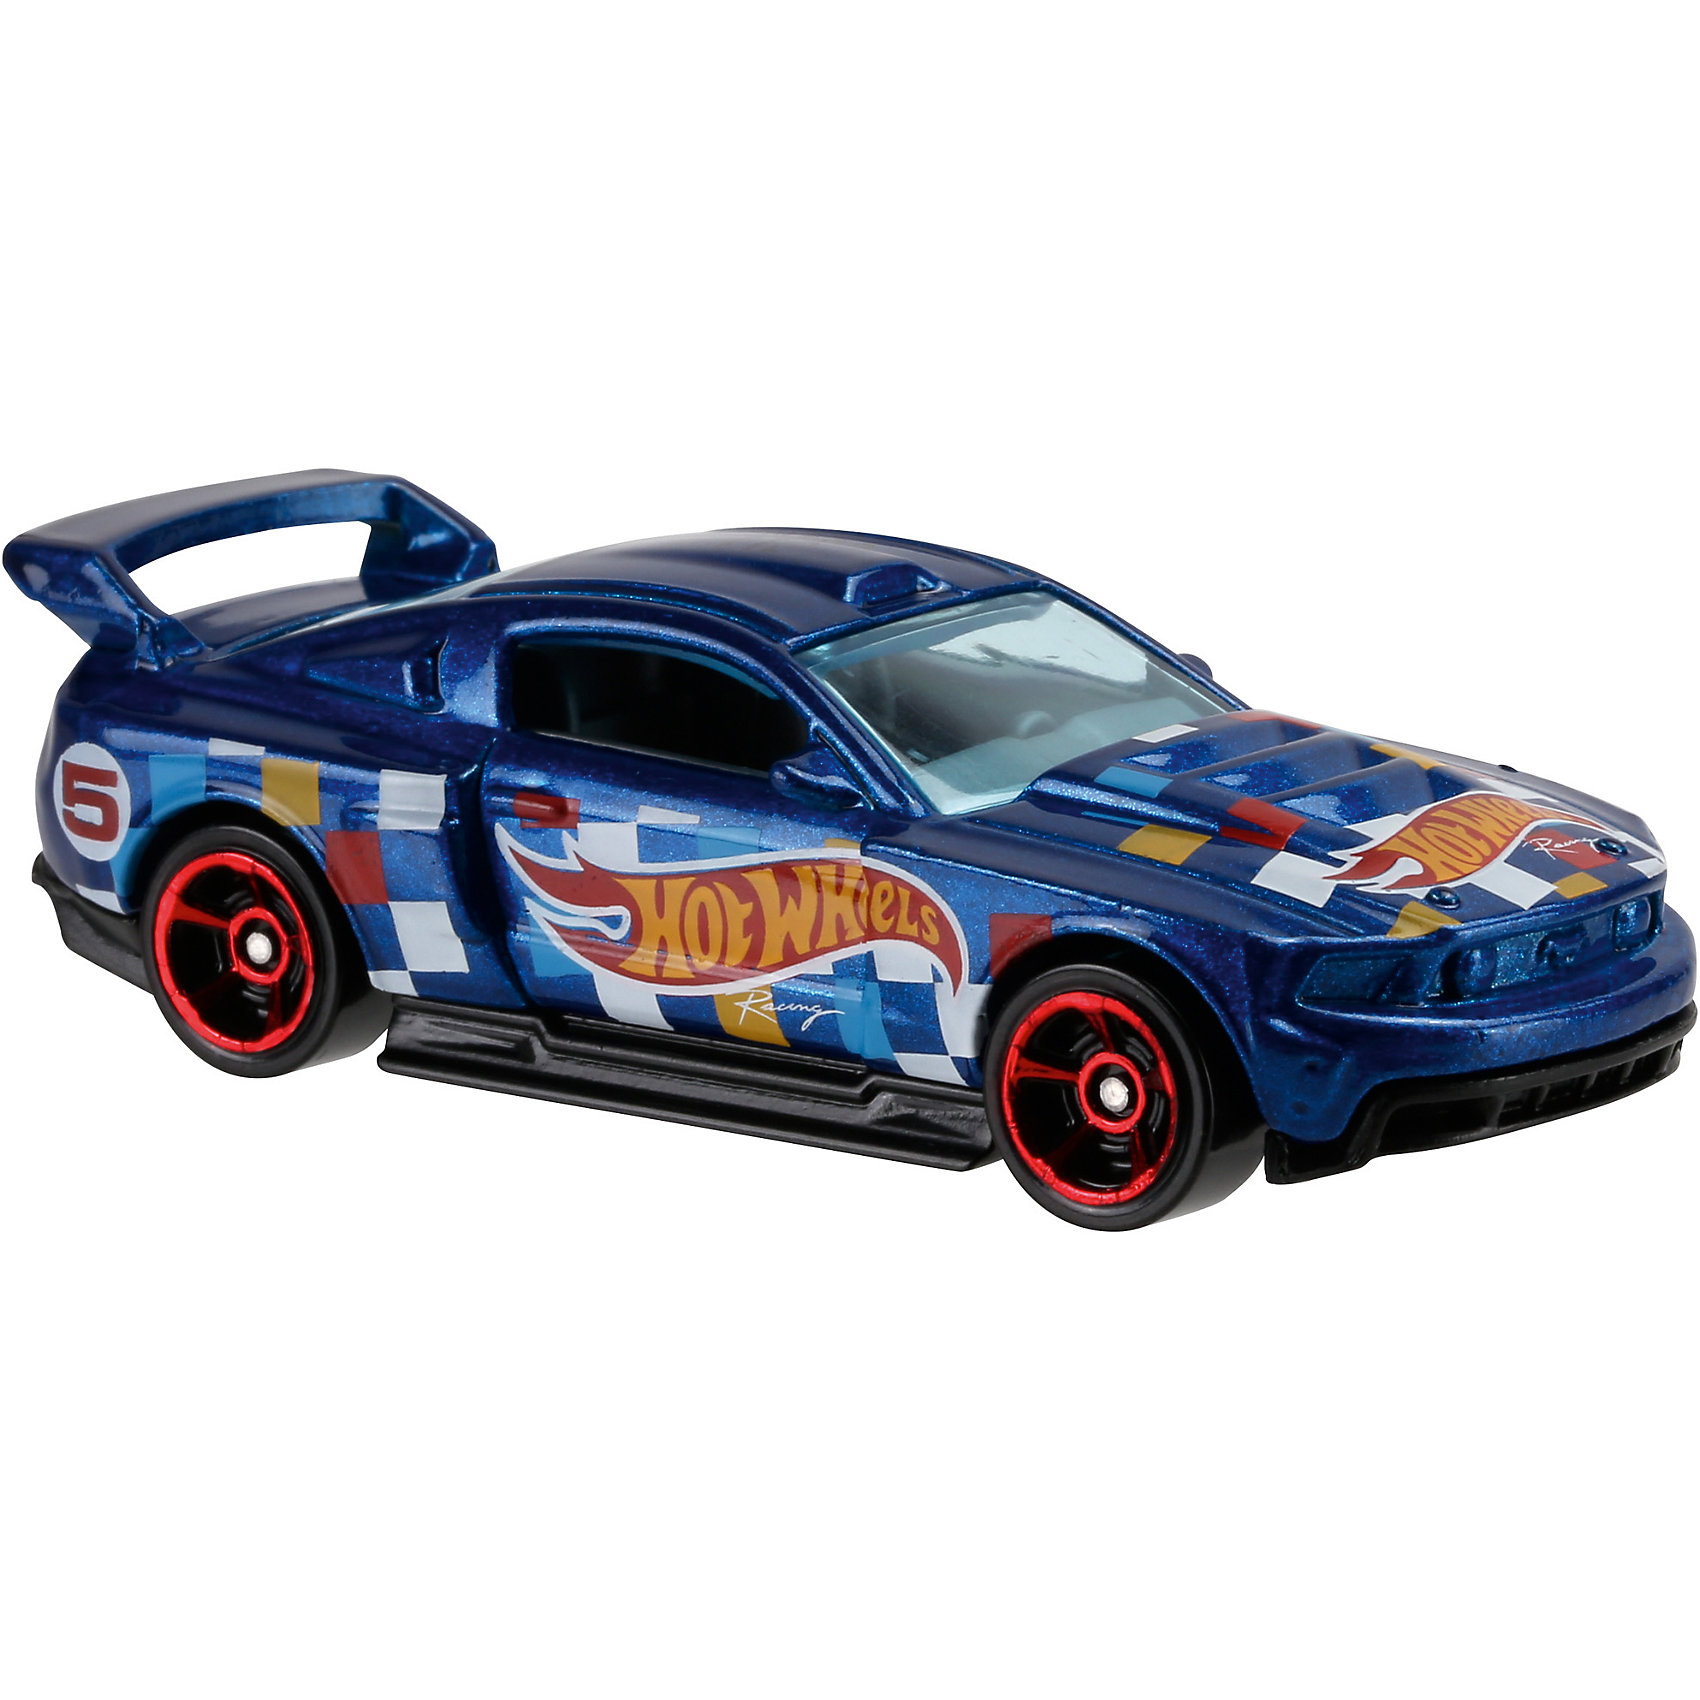 Машинка Hot Wheels из базовой коллекции Mattel 5033398 купит